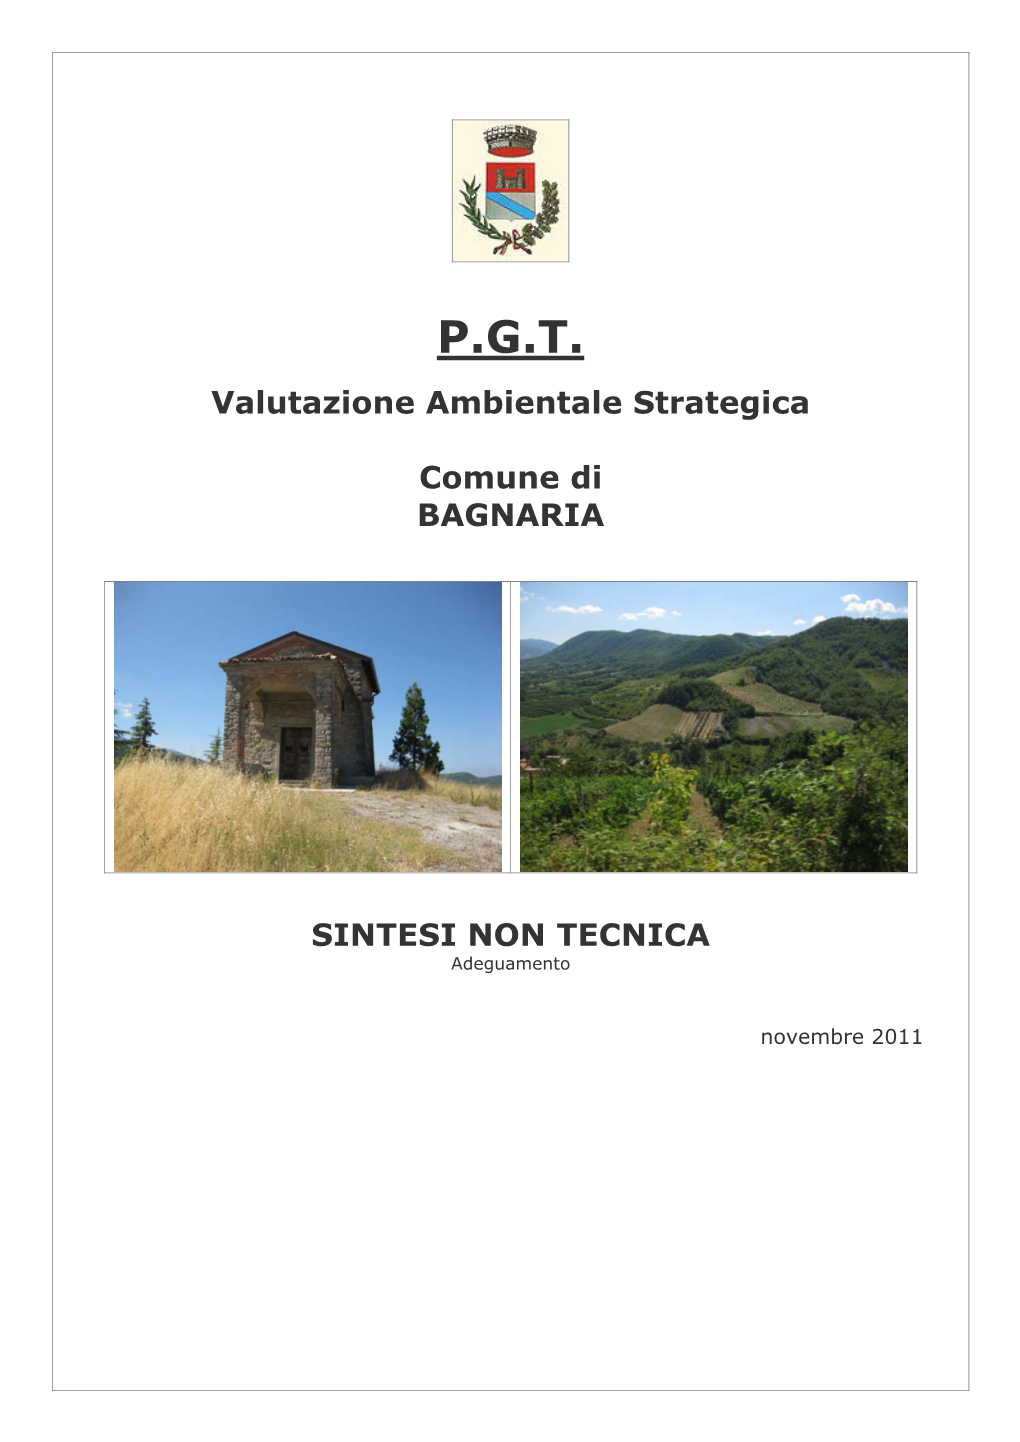 P.G.T. Valutazione Ambientale Strategica